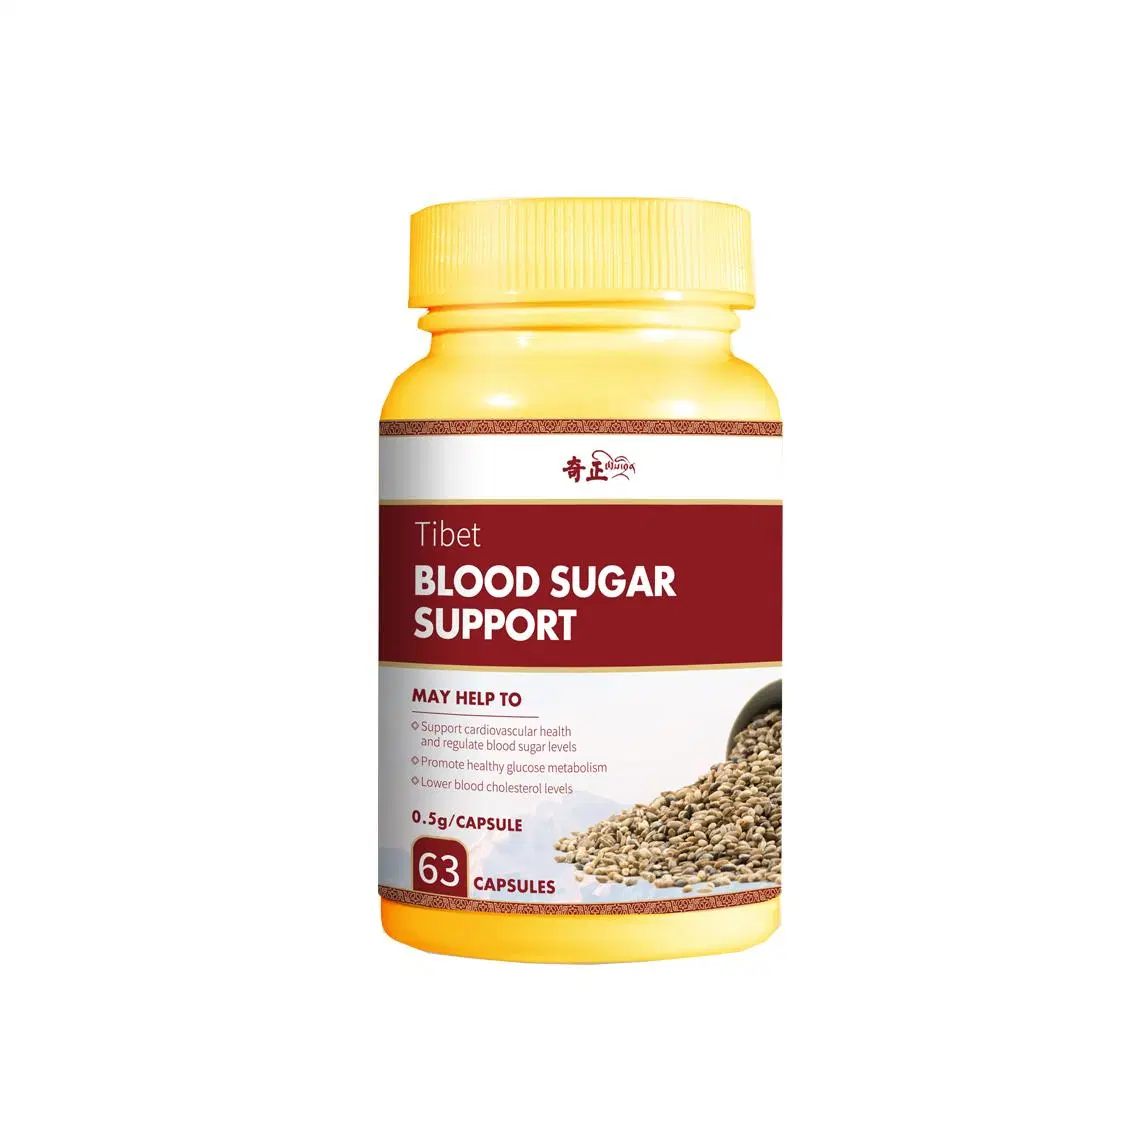 Vente chaude Capsule à base de plantes du fournisseur chinois pour soutenir les niveaux de sucre dans le sang / Alimentation saine / Soutien pour abaisser le taux de sucre dans le sang et le cholestérol sanguin.